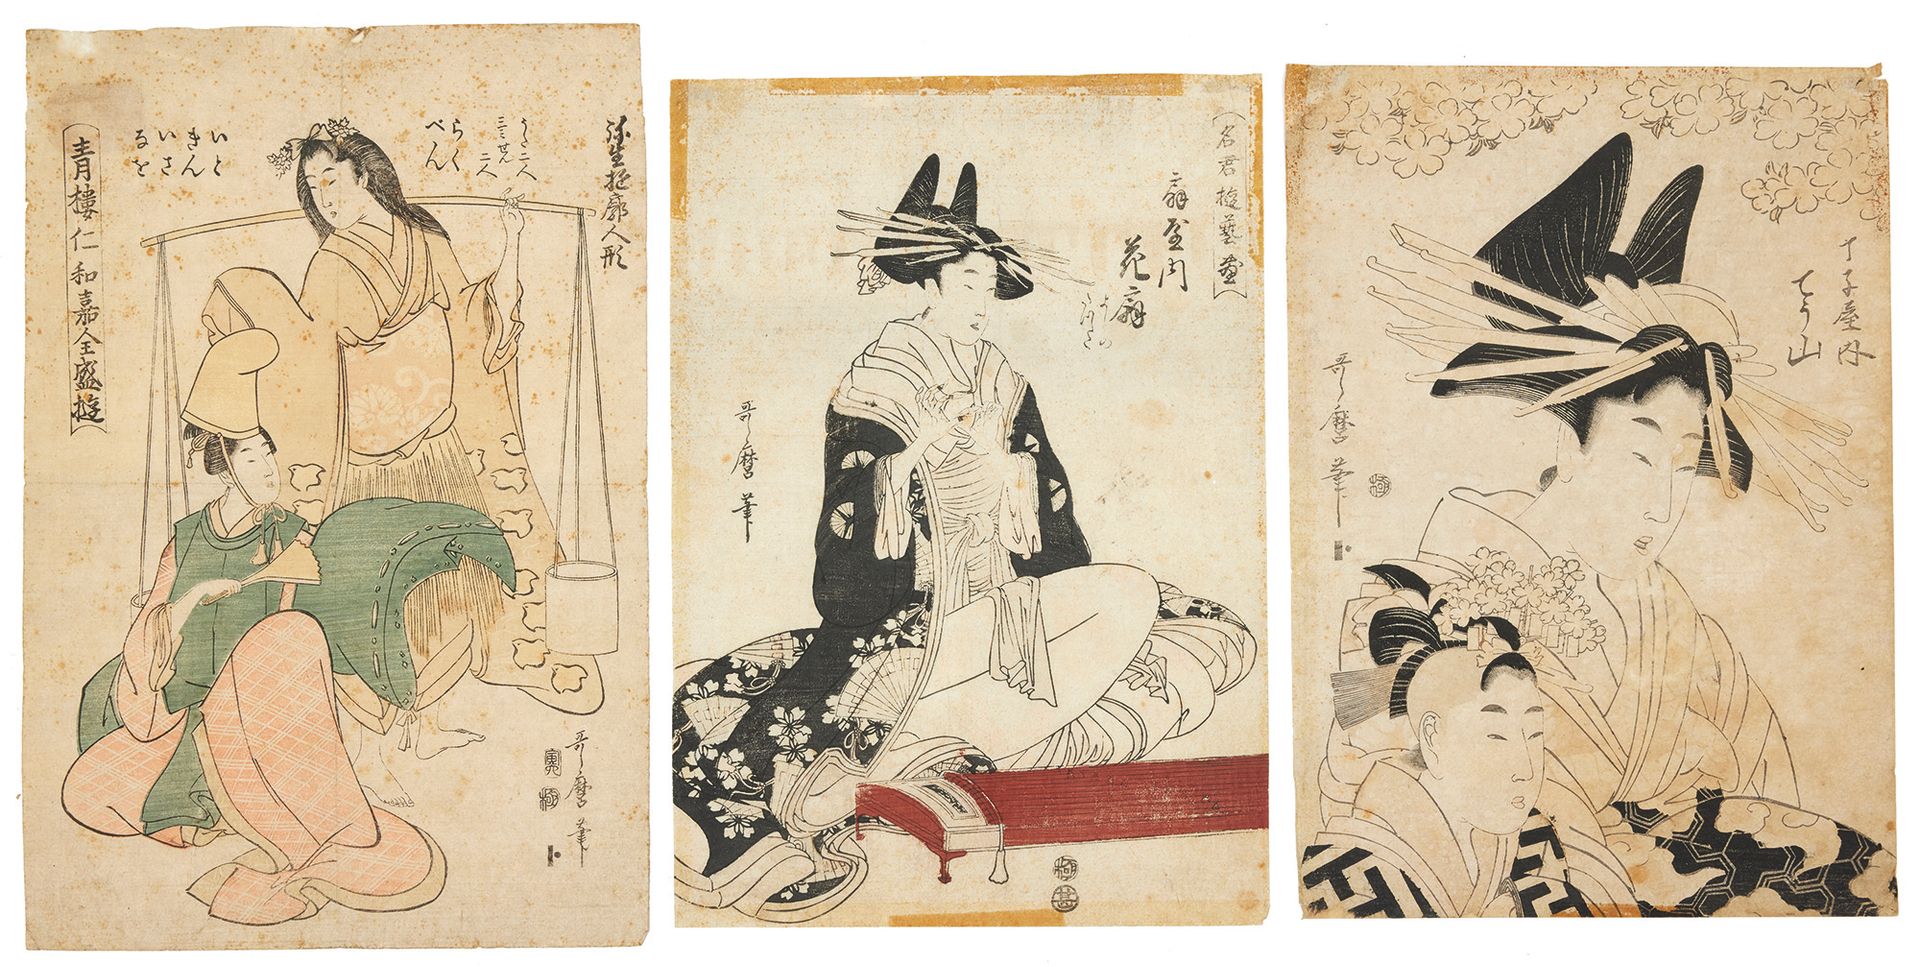 Null 北川宇多麿（1753-1806 年）的 3 幅版画
- 樱花下的歌妓》无标题系列中的 "Chôzan of Chôjiya with a young &hellip;